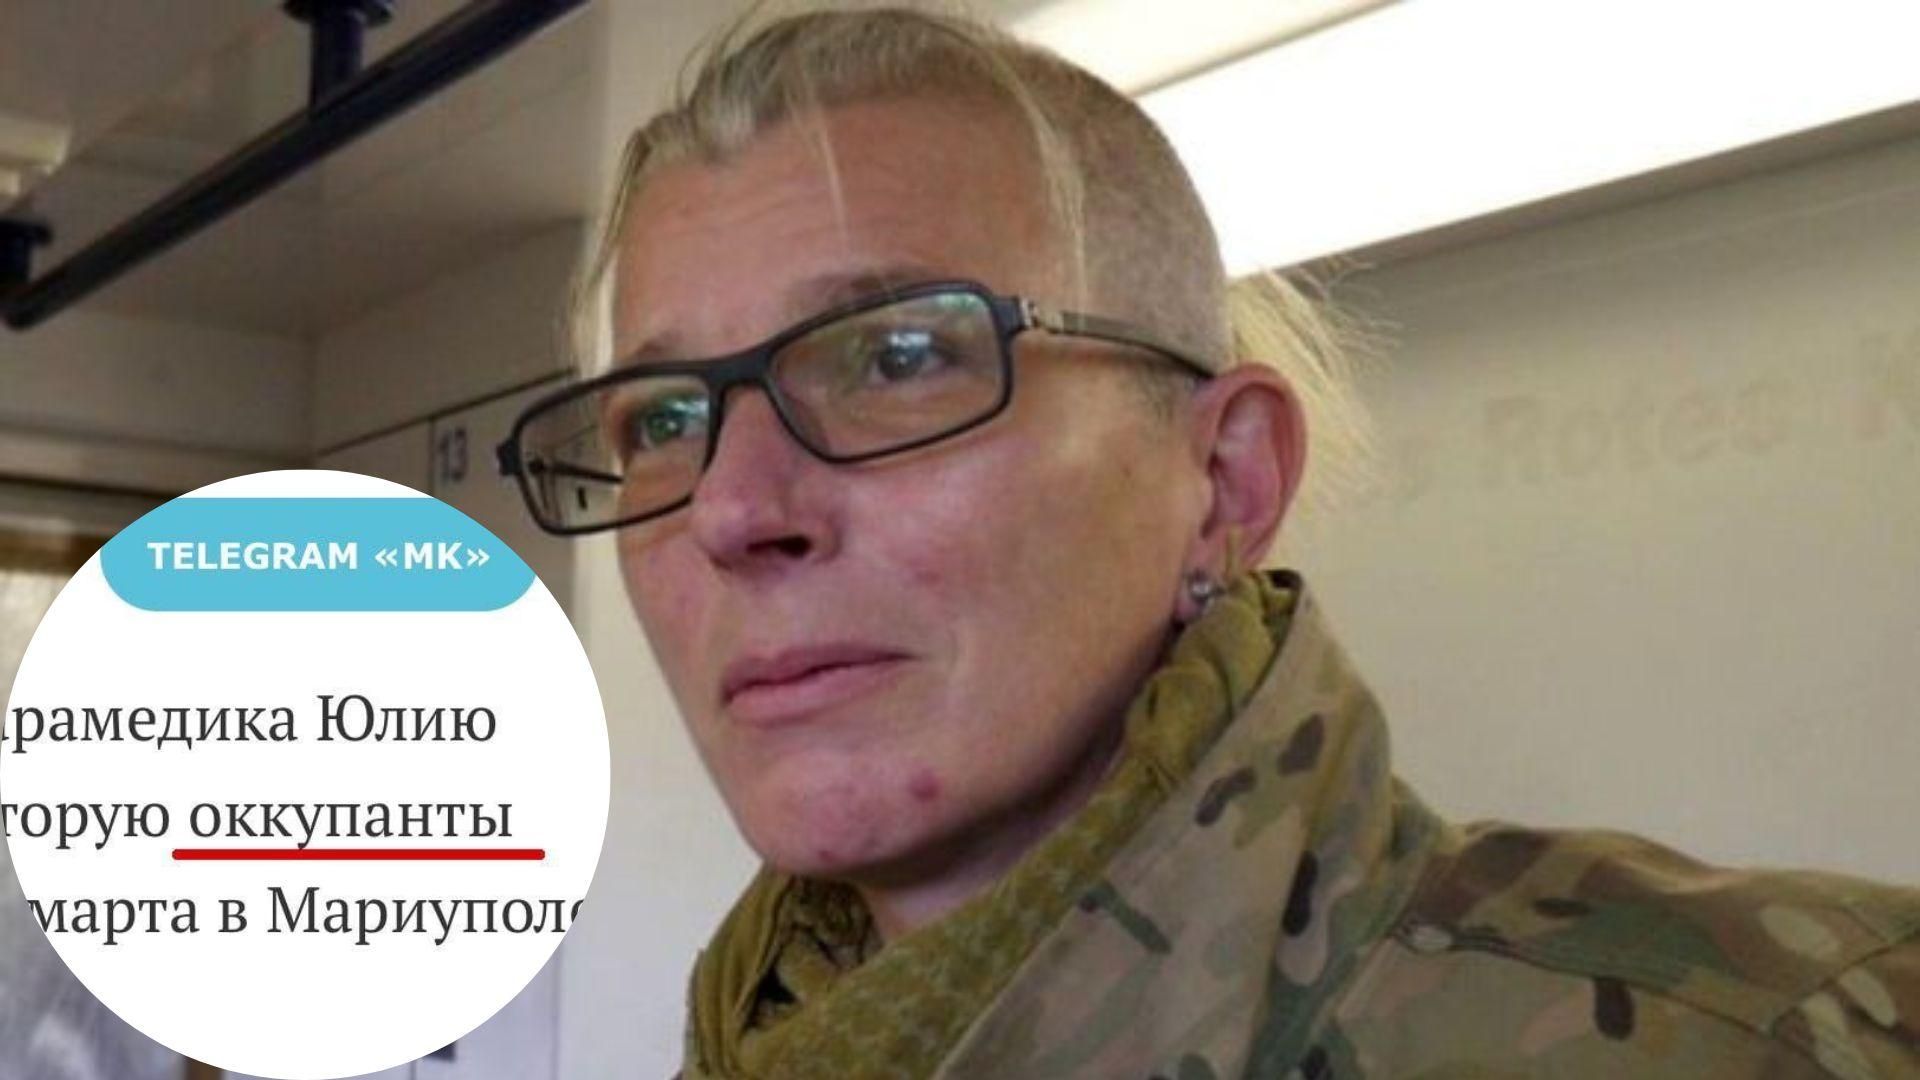 У російському ЗМІ редакторка назвала росіян "окупантами", коли писала про звільнення Тайри